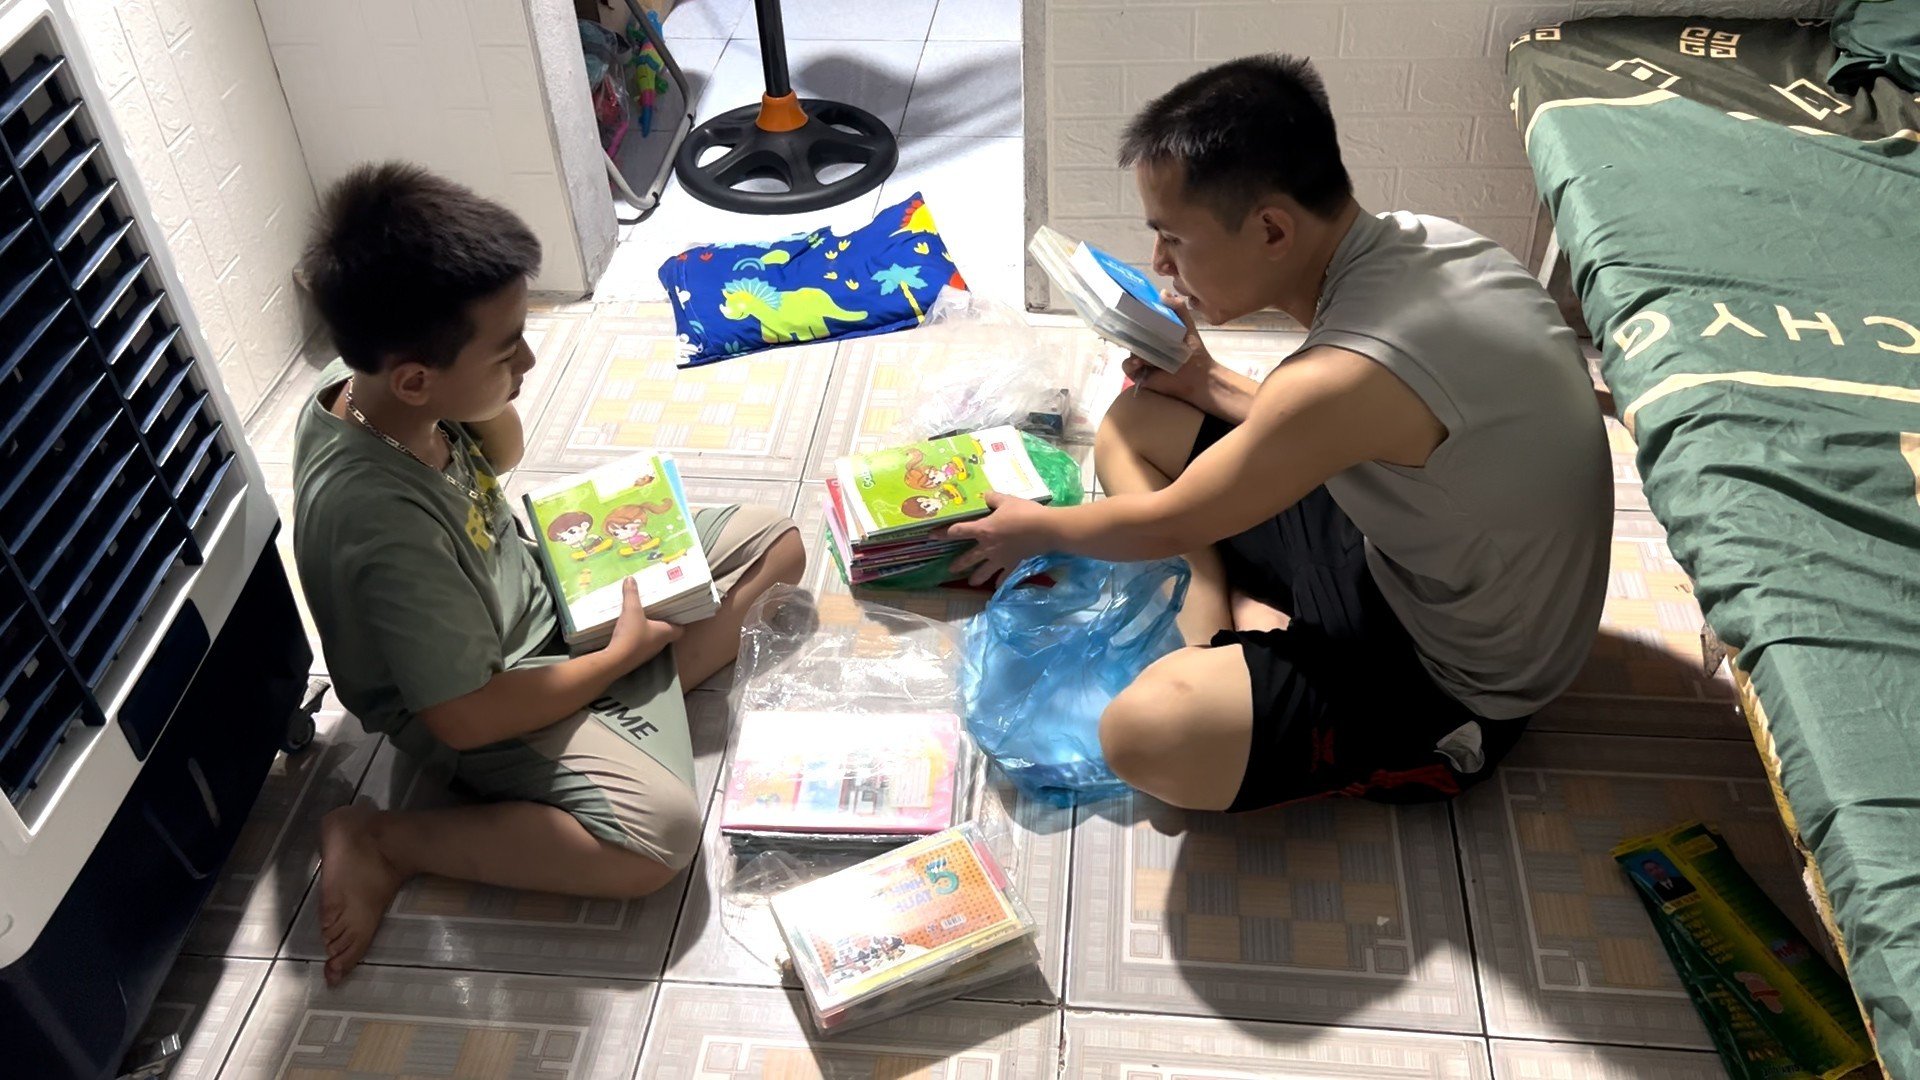 Vợ chồng chị Quỳnh tiết kiệm chi phí sinh hoạt để sắm sửa đồ dùng học tập cho con. Ảnh Hoài Luân